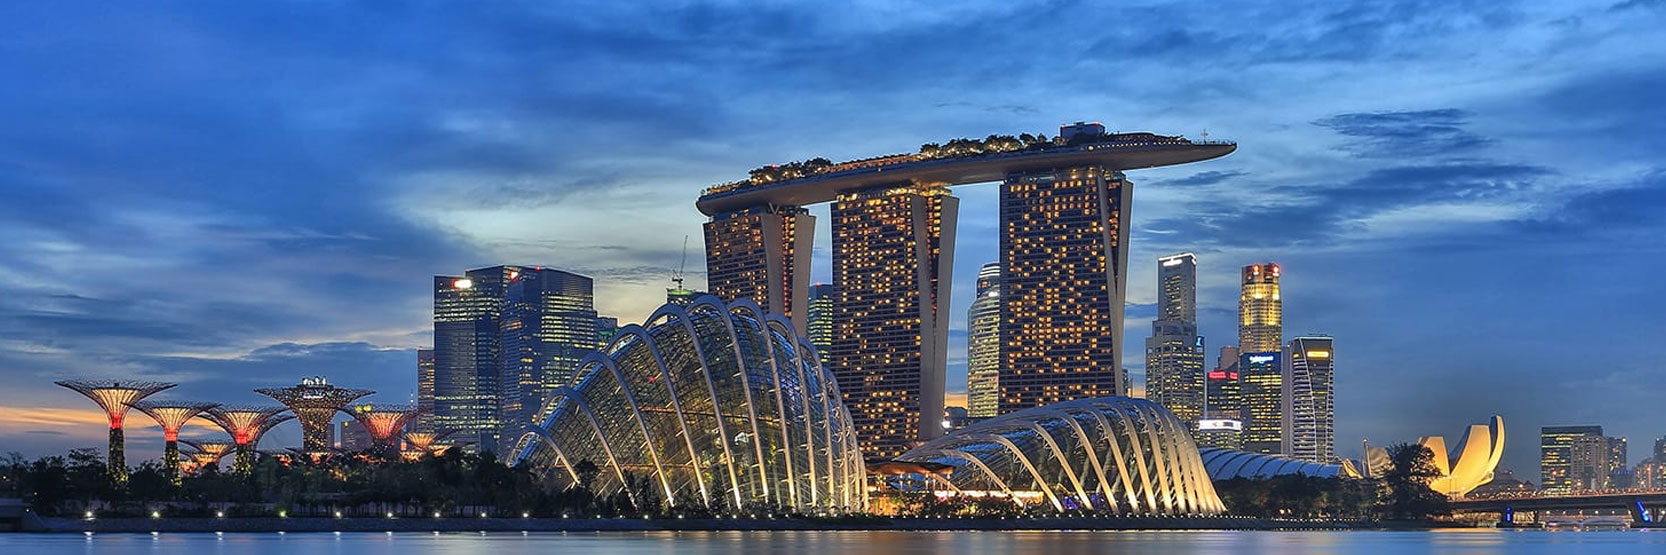 أهم المواقع السياحية في سنغافورة وأفضلها